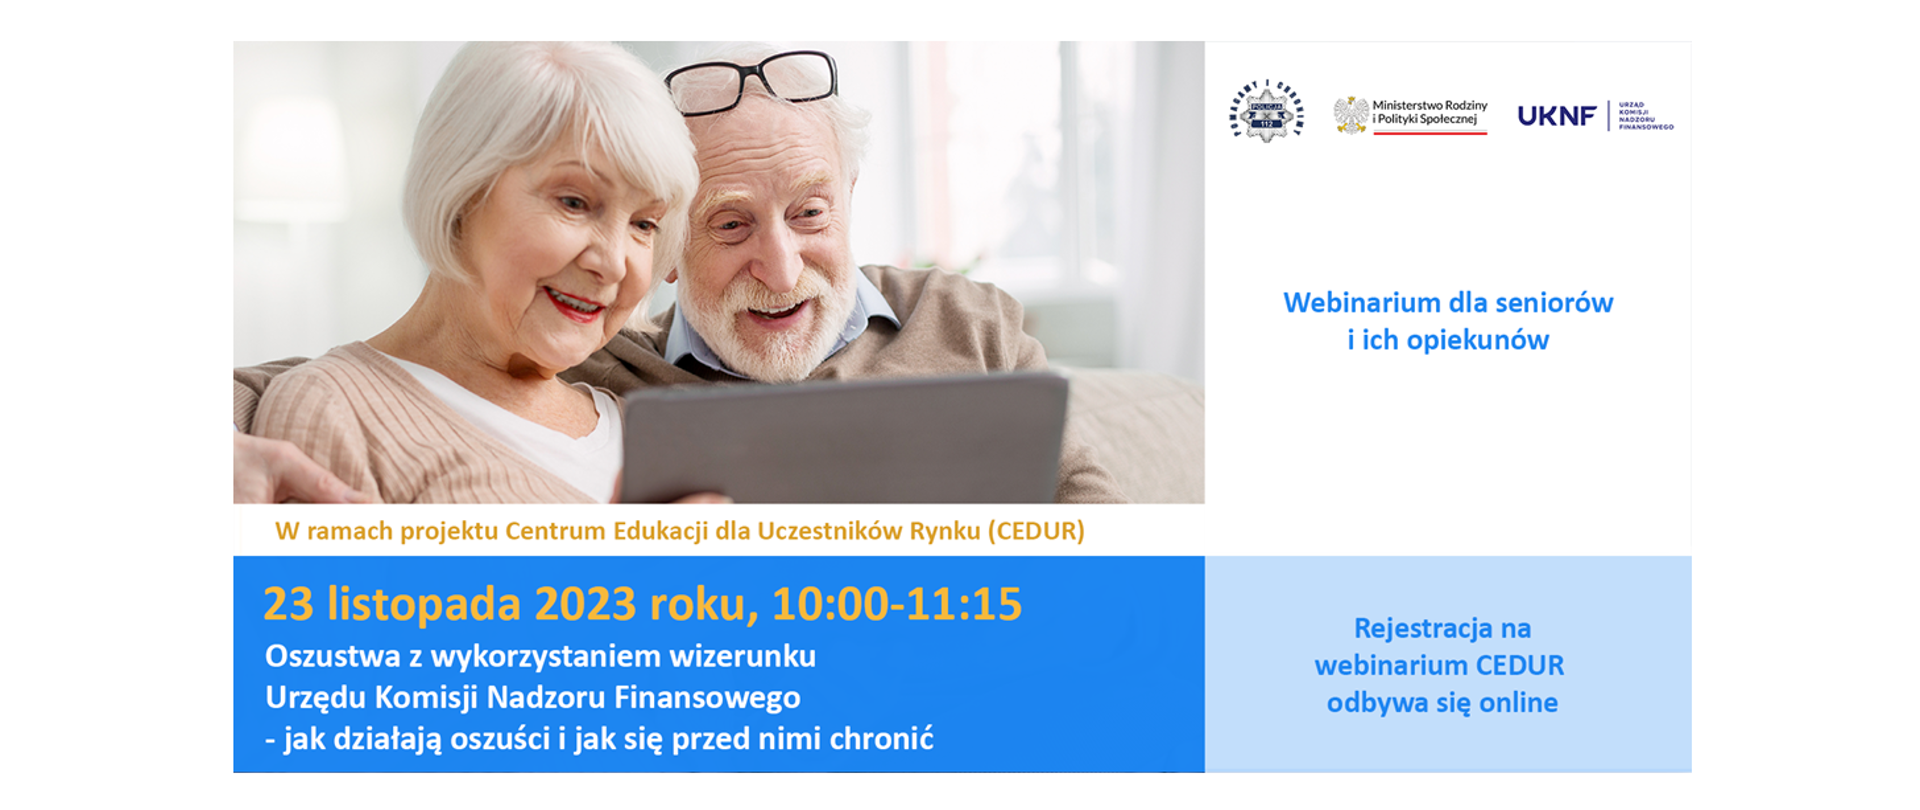 Urząd KNF - zaproszenie na webinarium CEDUR dla seniorów i ich opiekunów "Oszustwa z wykorzystaniem wizerunku Urzędu Komisji Nadzoru Finansowego - jak działają oszuści i jak się przed nimi chronić", 23 listopada 2023 roku